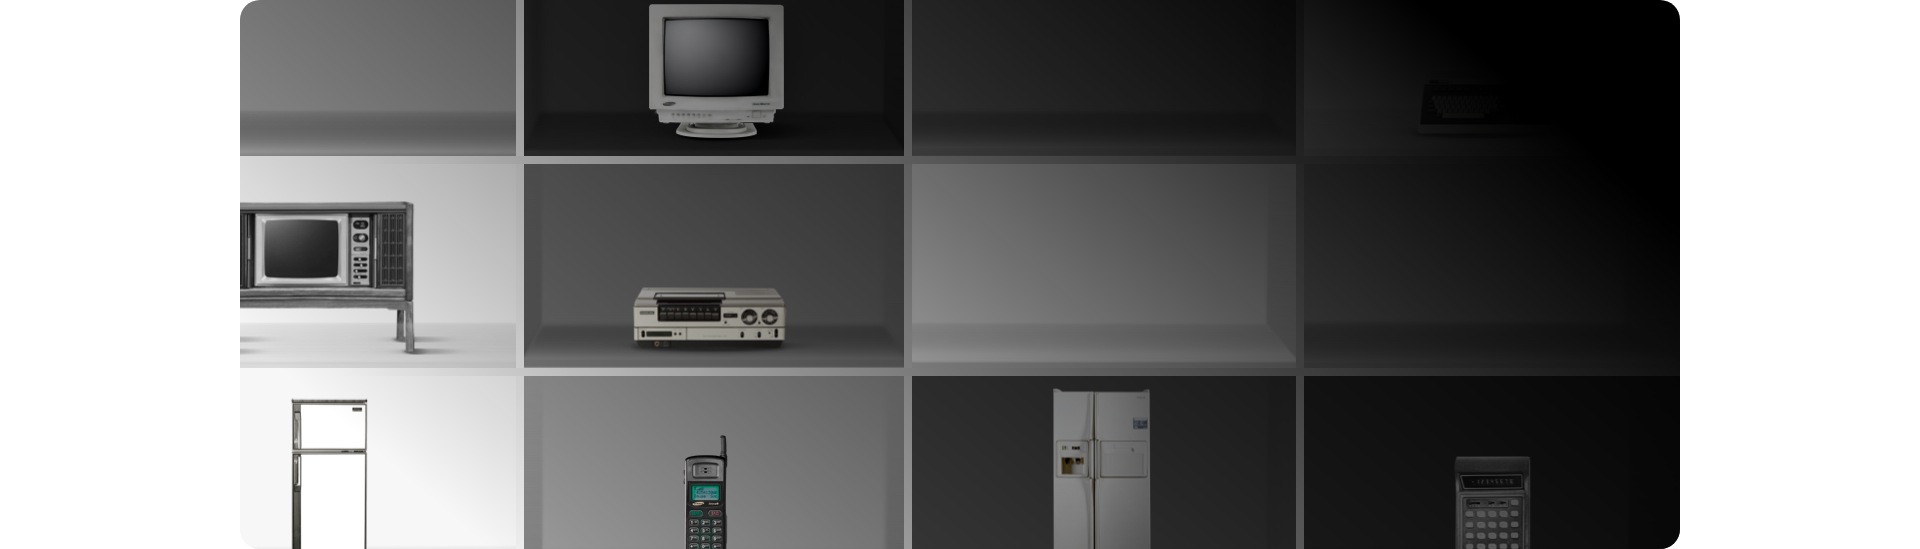 In einem schwarzen und weißen Schrank befinden sich alte Samsung-Produkte wie ein Monitor, ein Mobiltelefon, ein Fernseher, ein Radio, eine Schreibmaschine und zwei Kühlschränke. 